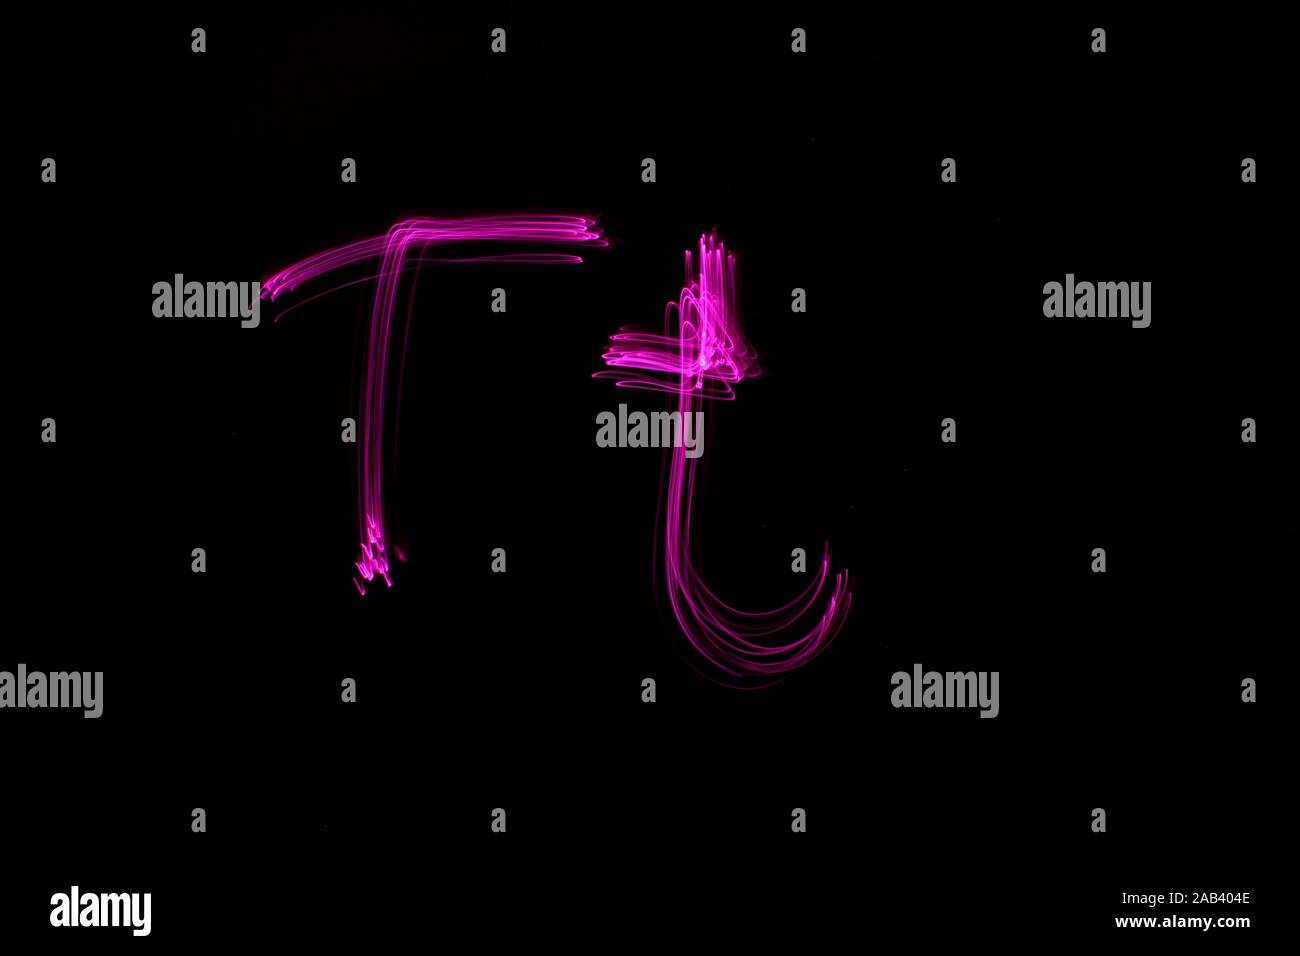 Une longue exposition photo de la lettre t en couleur néon rose, en majuscules et minuscules, motif de lignes parallèles sur un fond noir. Banque D'Images